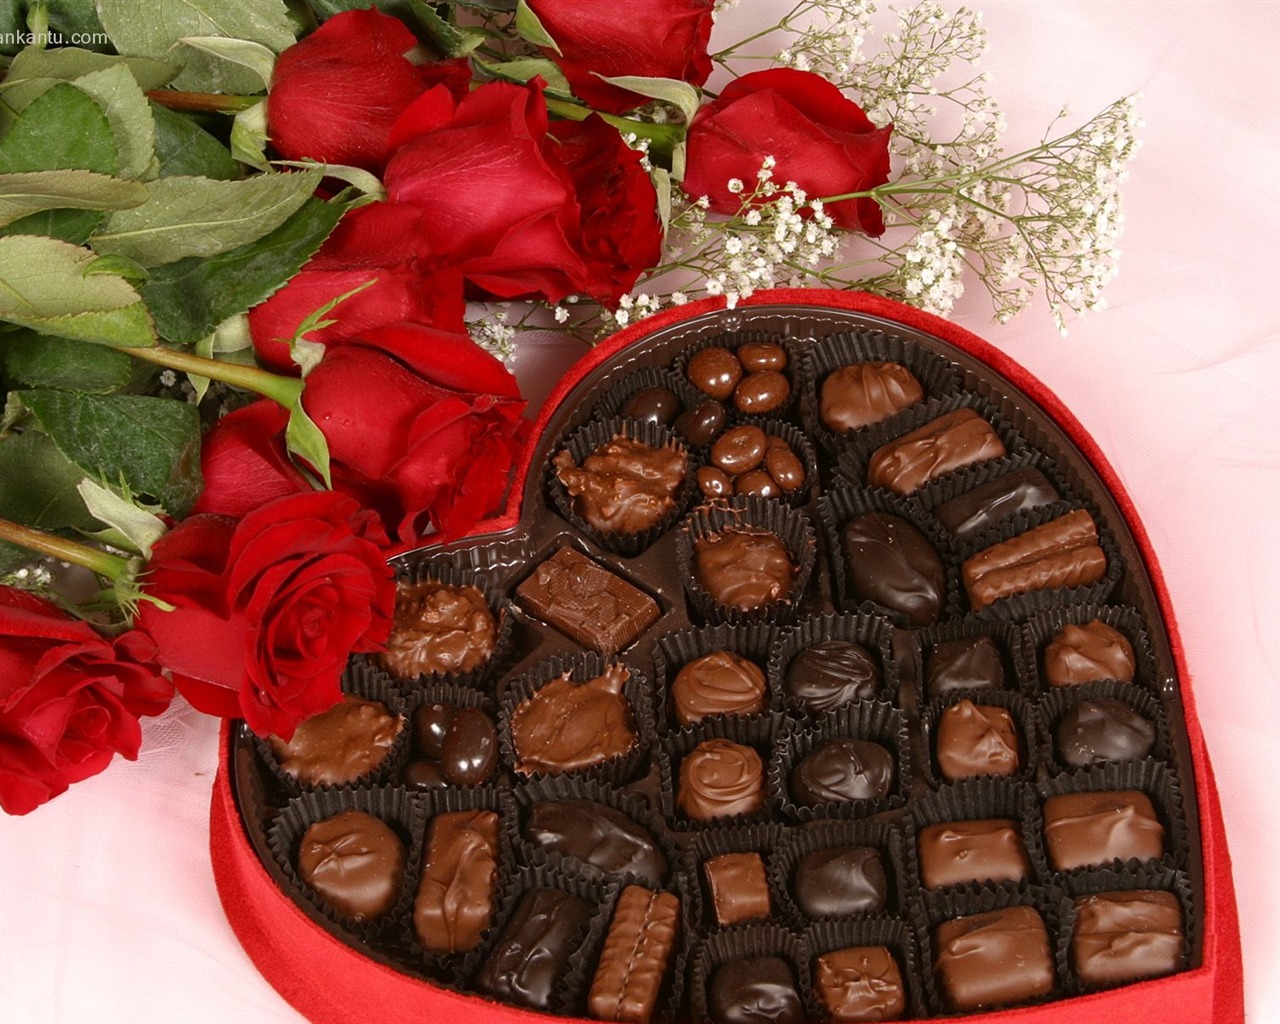 Le indélébile Saint Valentin au chocolat #12 - 1280x1024